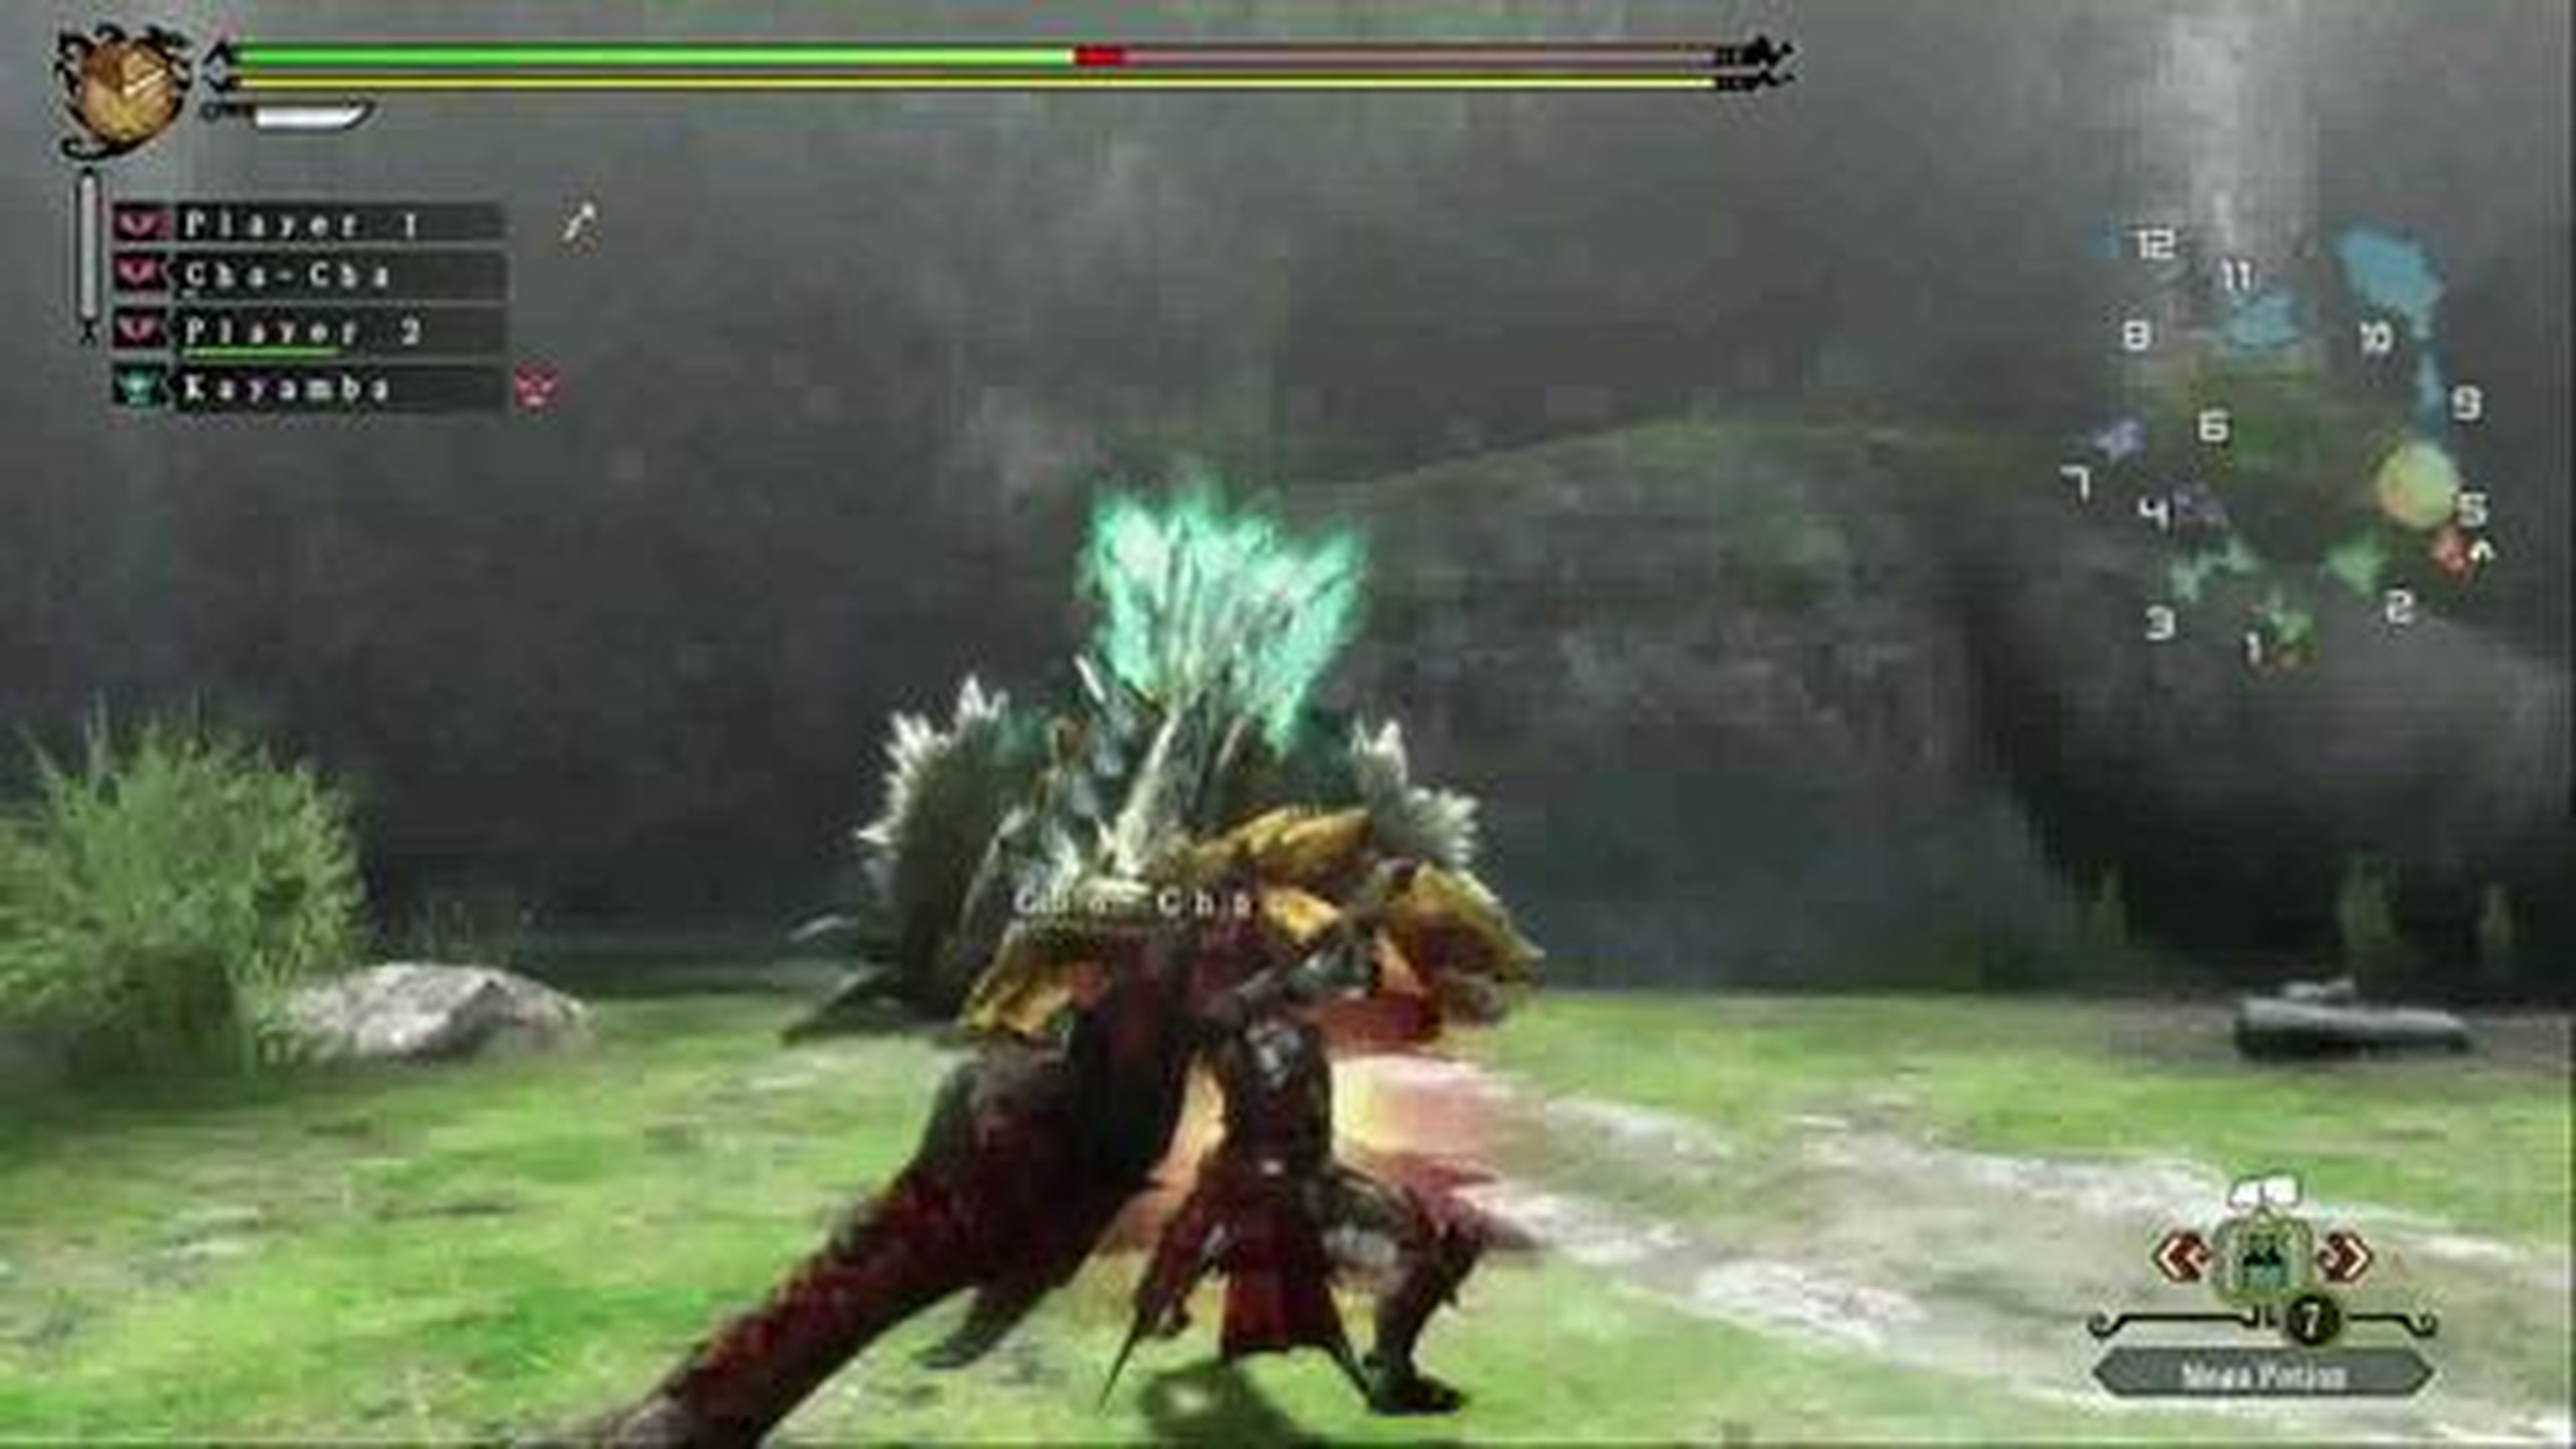 Batalla contra Zinogre de Monster Hunter 3 Ultimate en HobbyConsolas.com